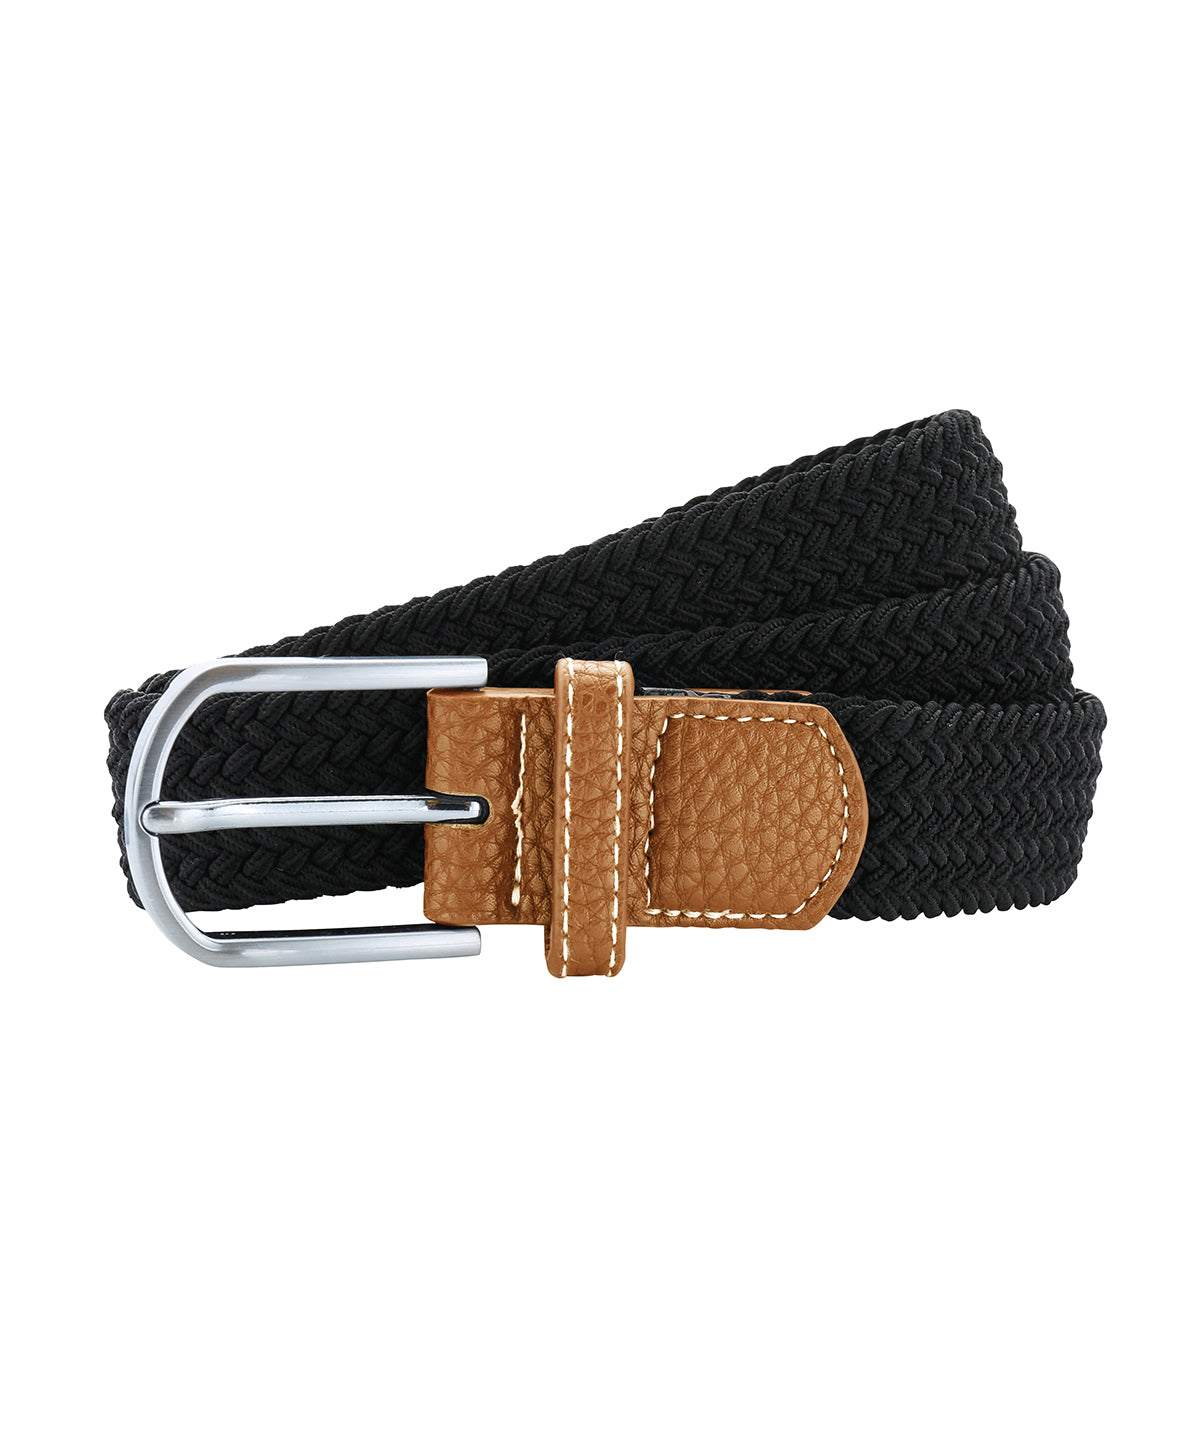 Belti - Braid Stretch Belt